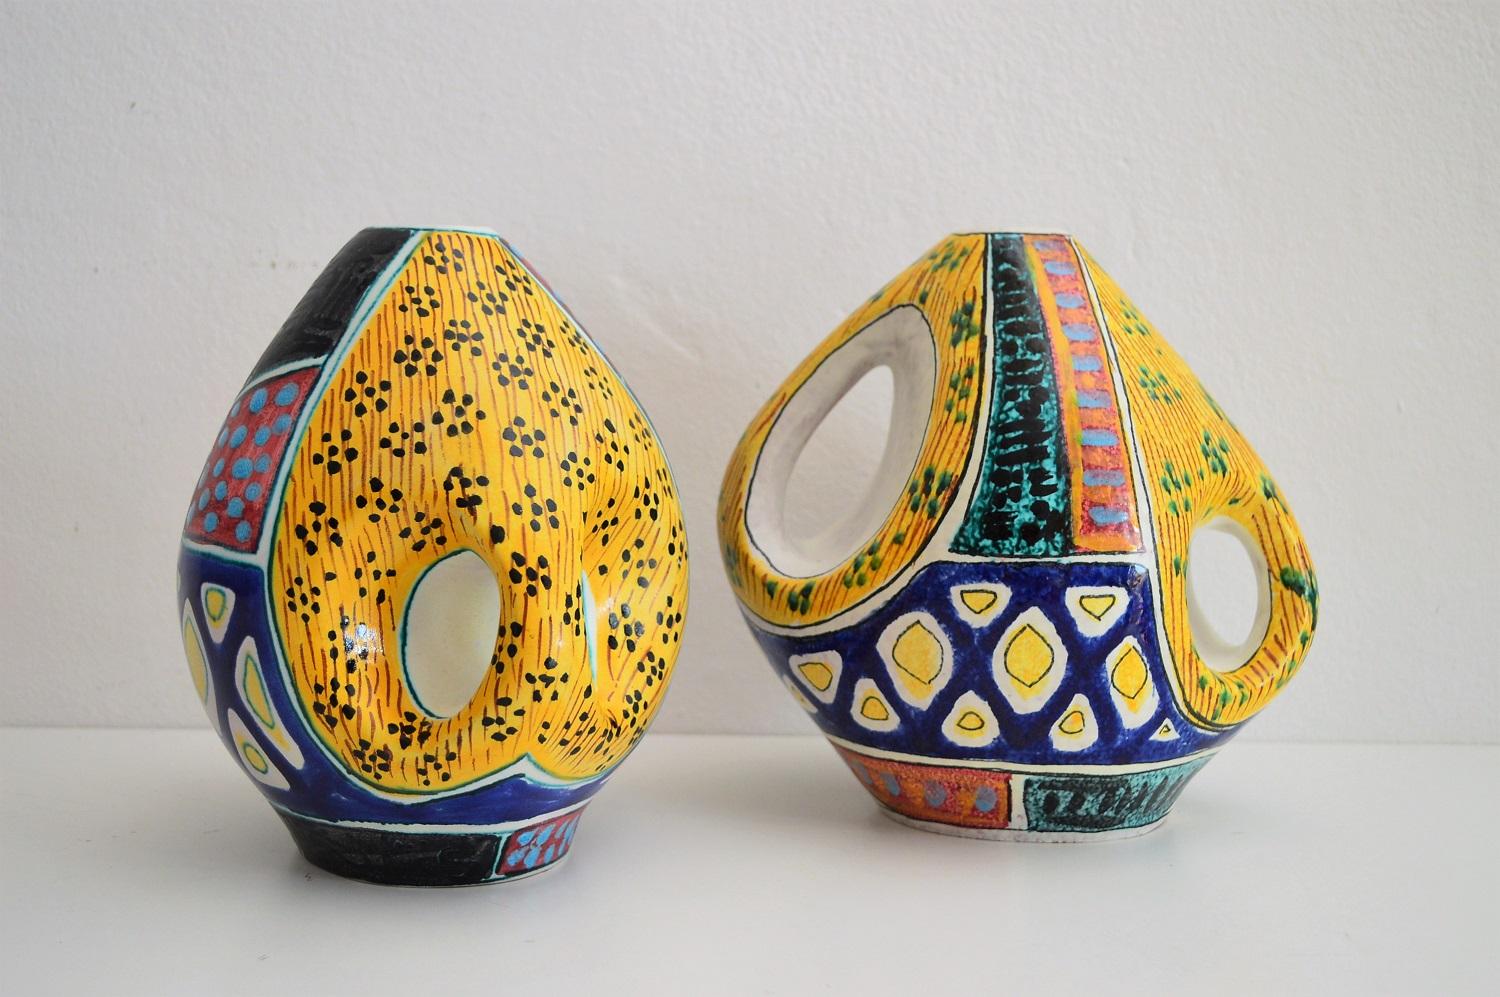 Schöner Satz von zwei bunten Stücken Keramik Vasen oder Gefäße mit typischen Muster aus der Mitte des Jahrhunderts, ca. 1950-1960.
Hergestellt in Norditalien von Valceresio Ceramic in der Nähe des Ceresio-Sees, einer Firma, die es heute nicht mehr